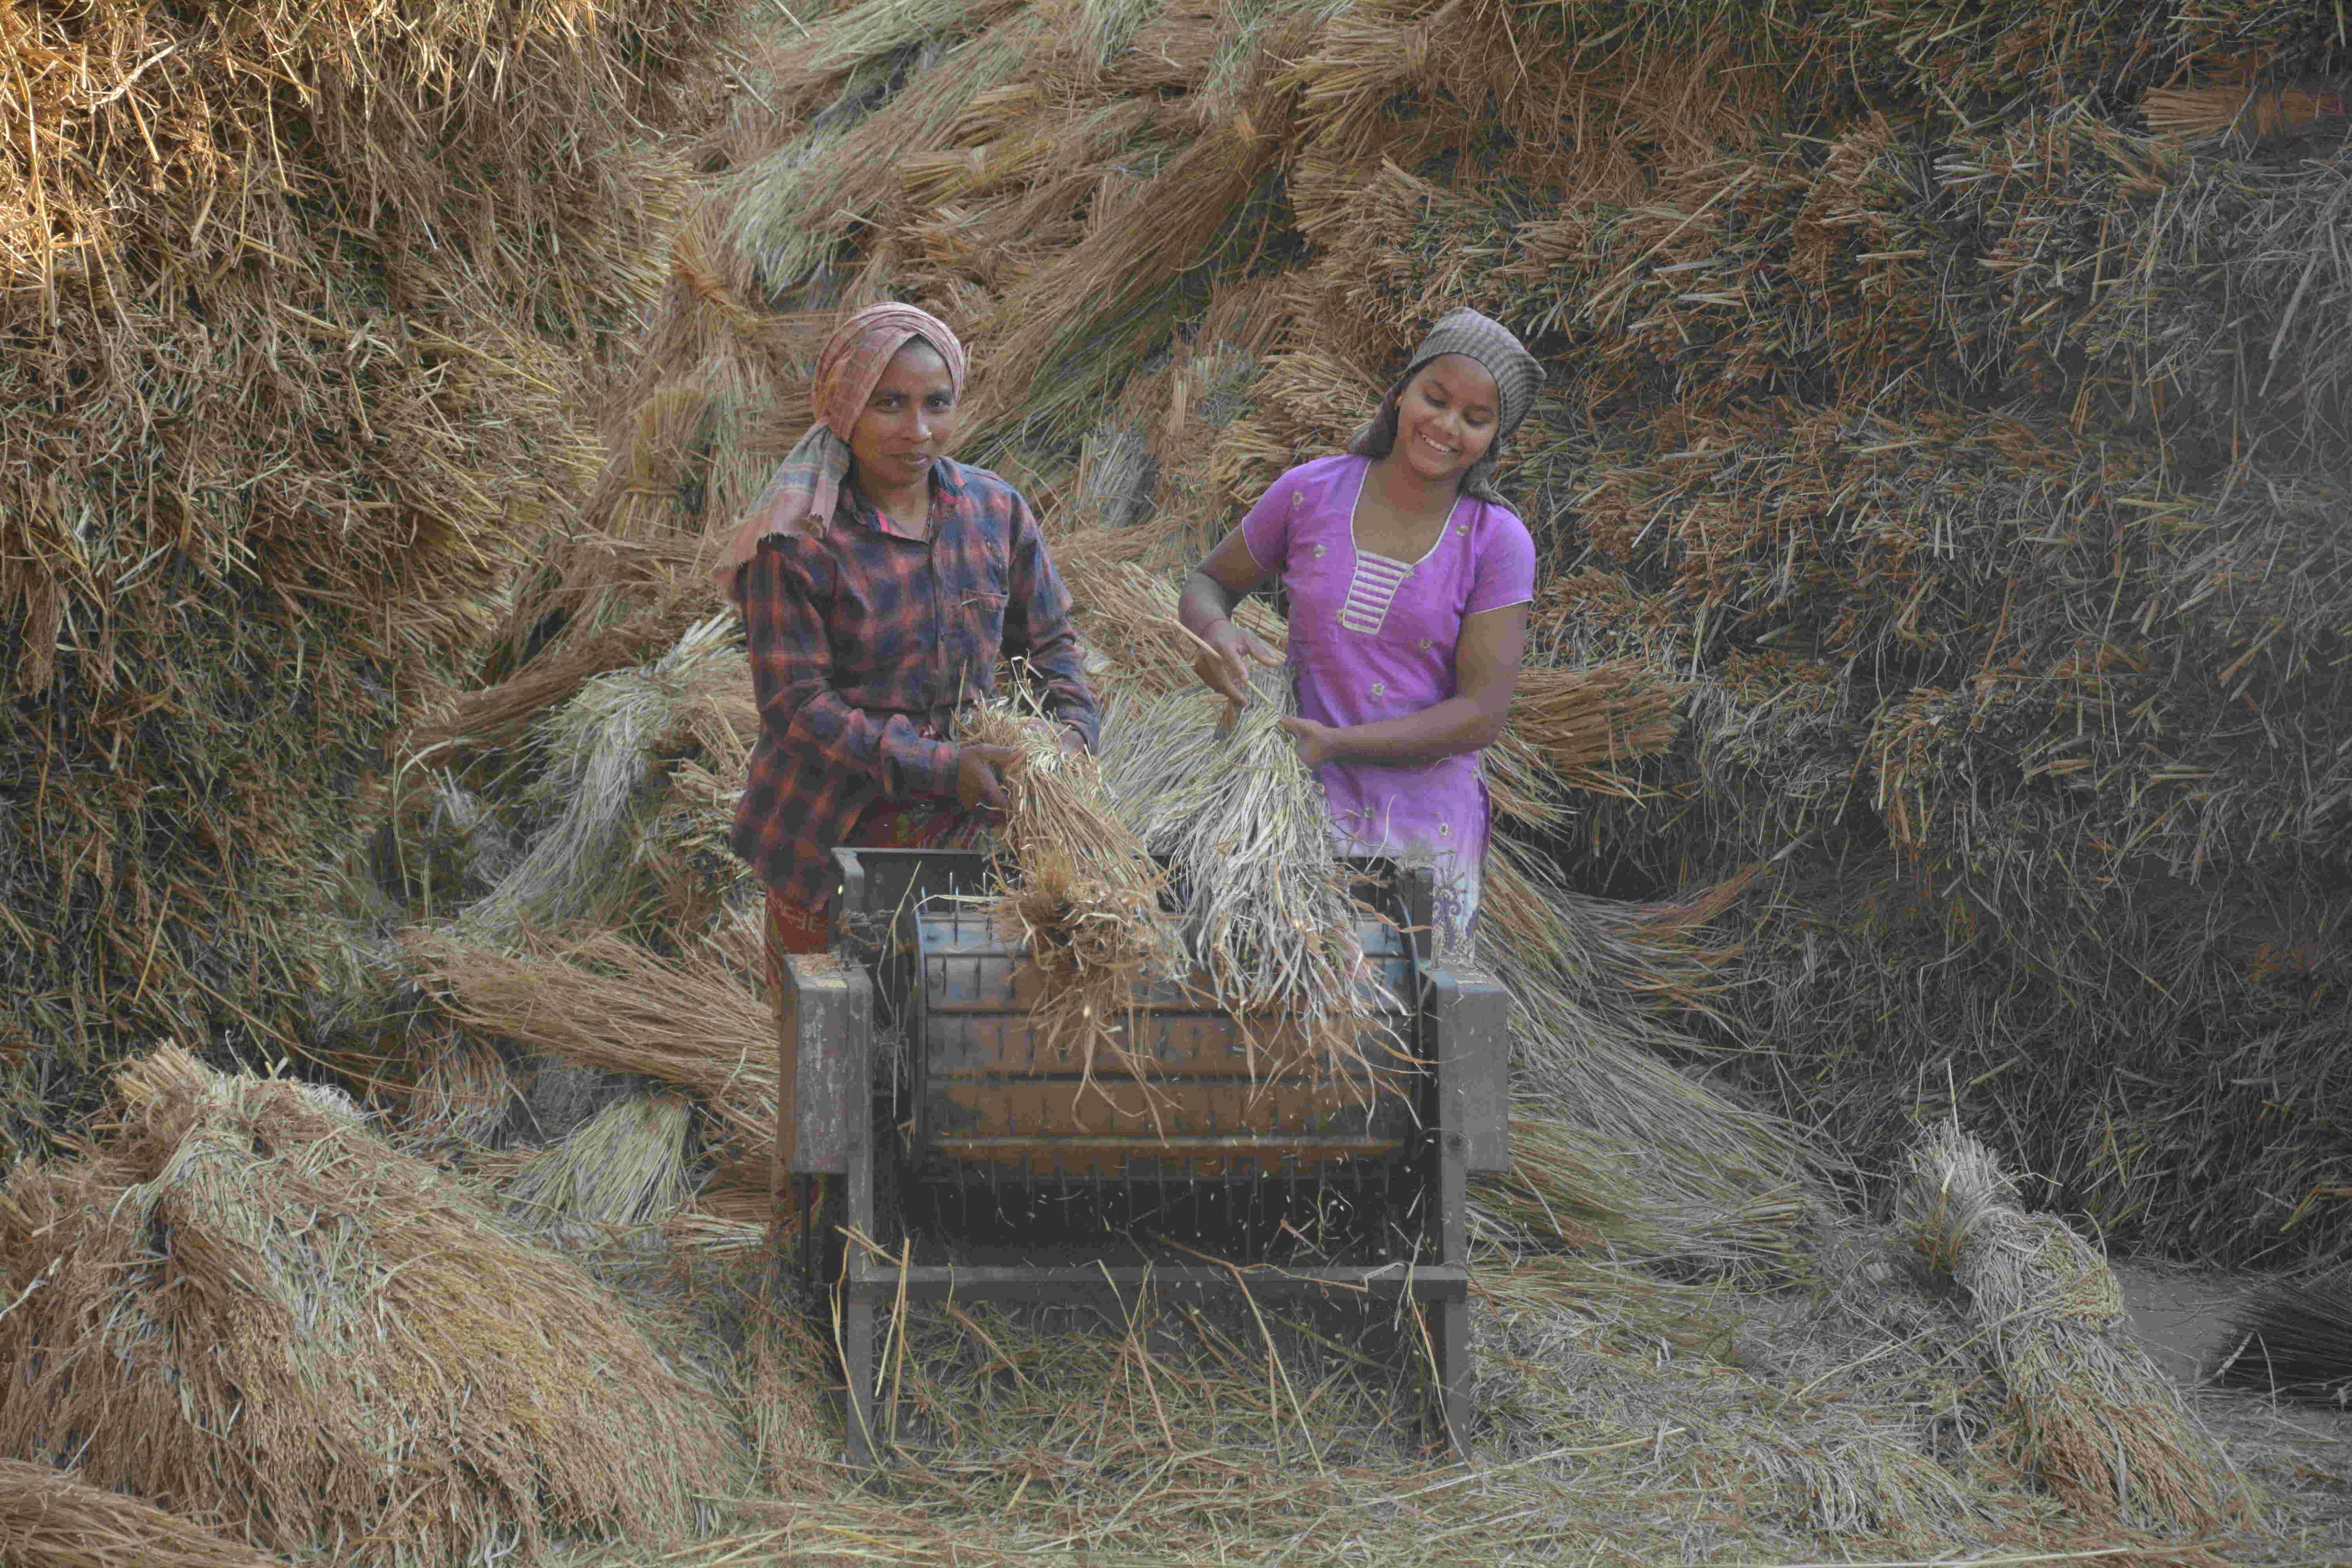 महिलाएं सिर्फ घर ही नहीं, भारत की जीडीपी में सबसे ज्यादा योगदान देने वाली कृषि क्षेत्र की धुरी भी हैं